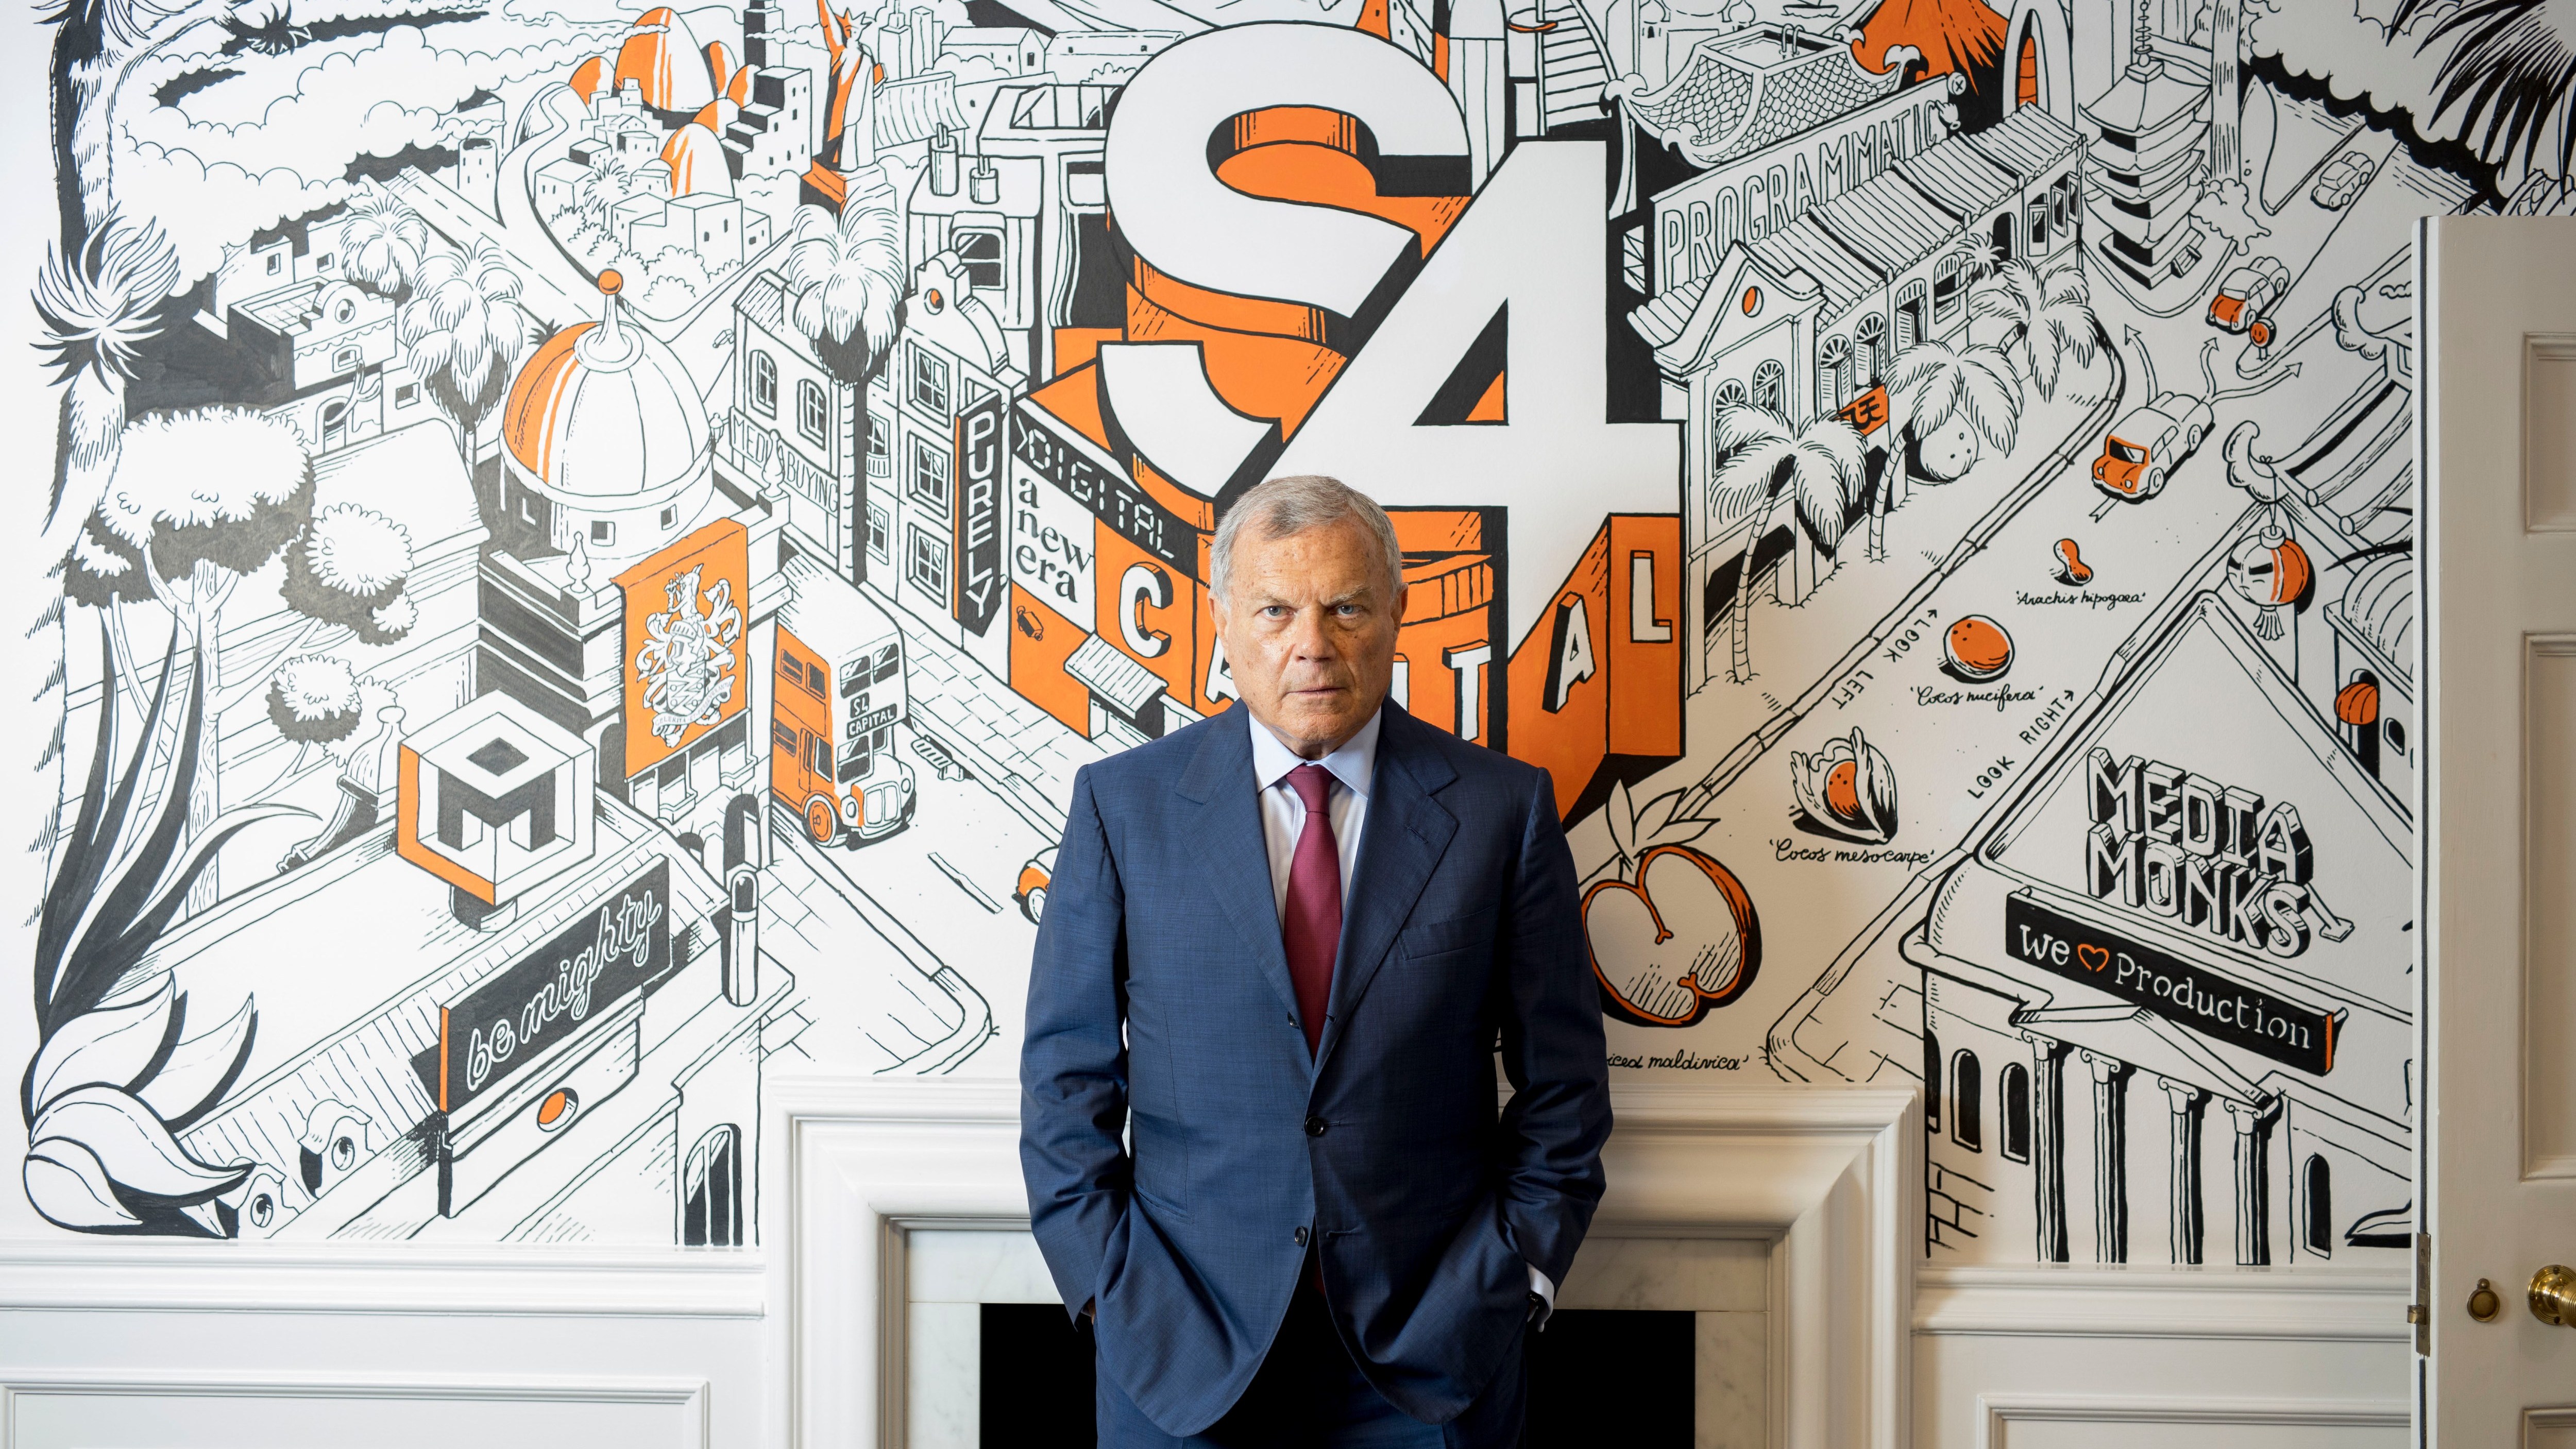 S4 Capital facing another tough year, says Sorrell